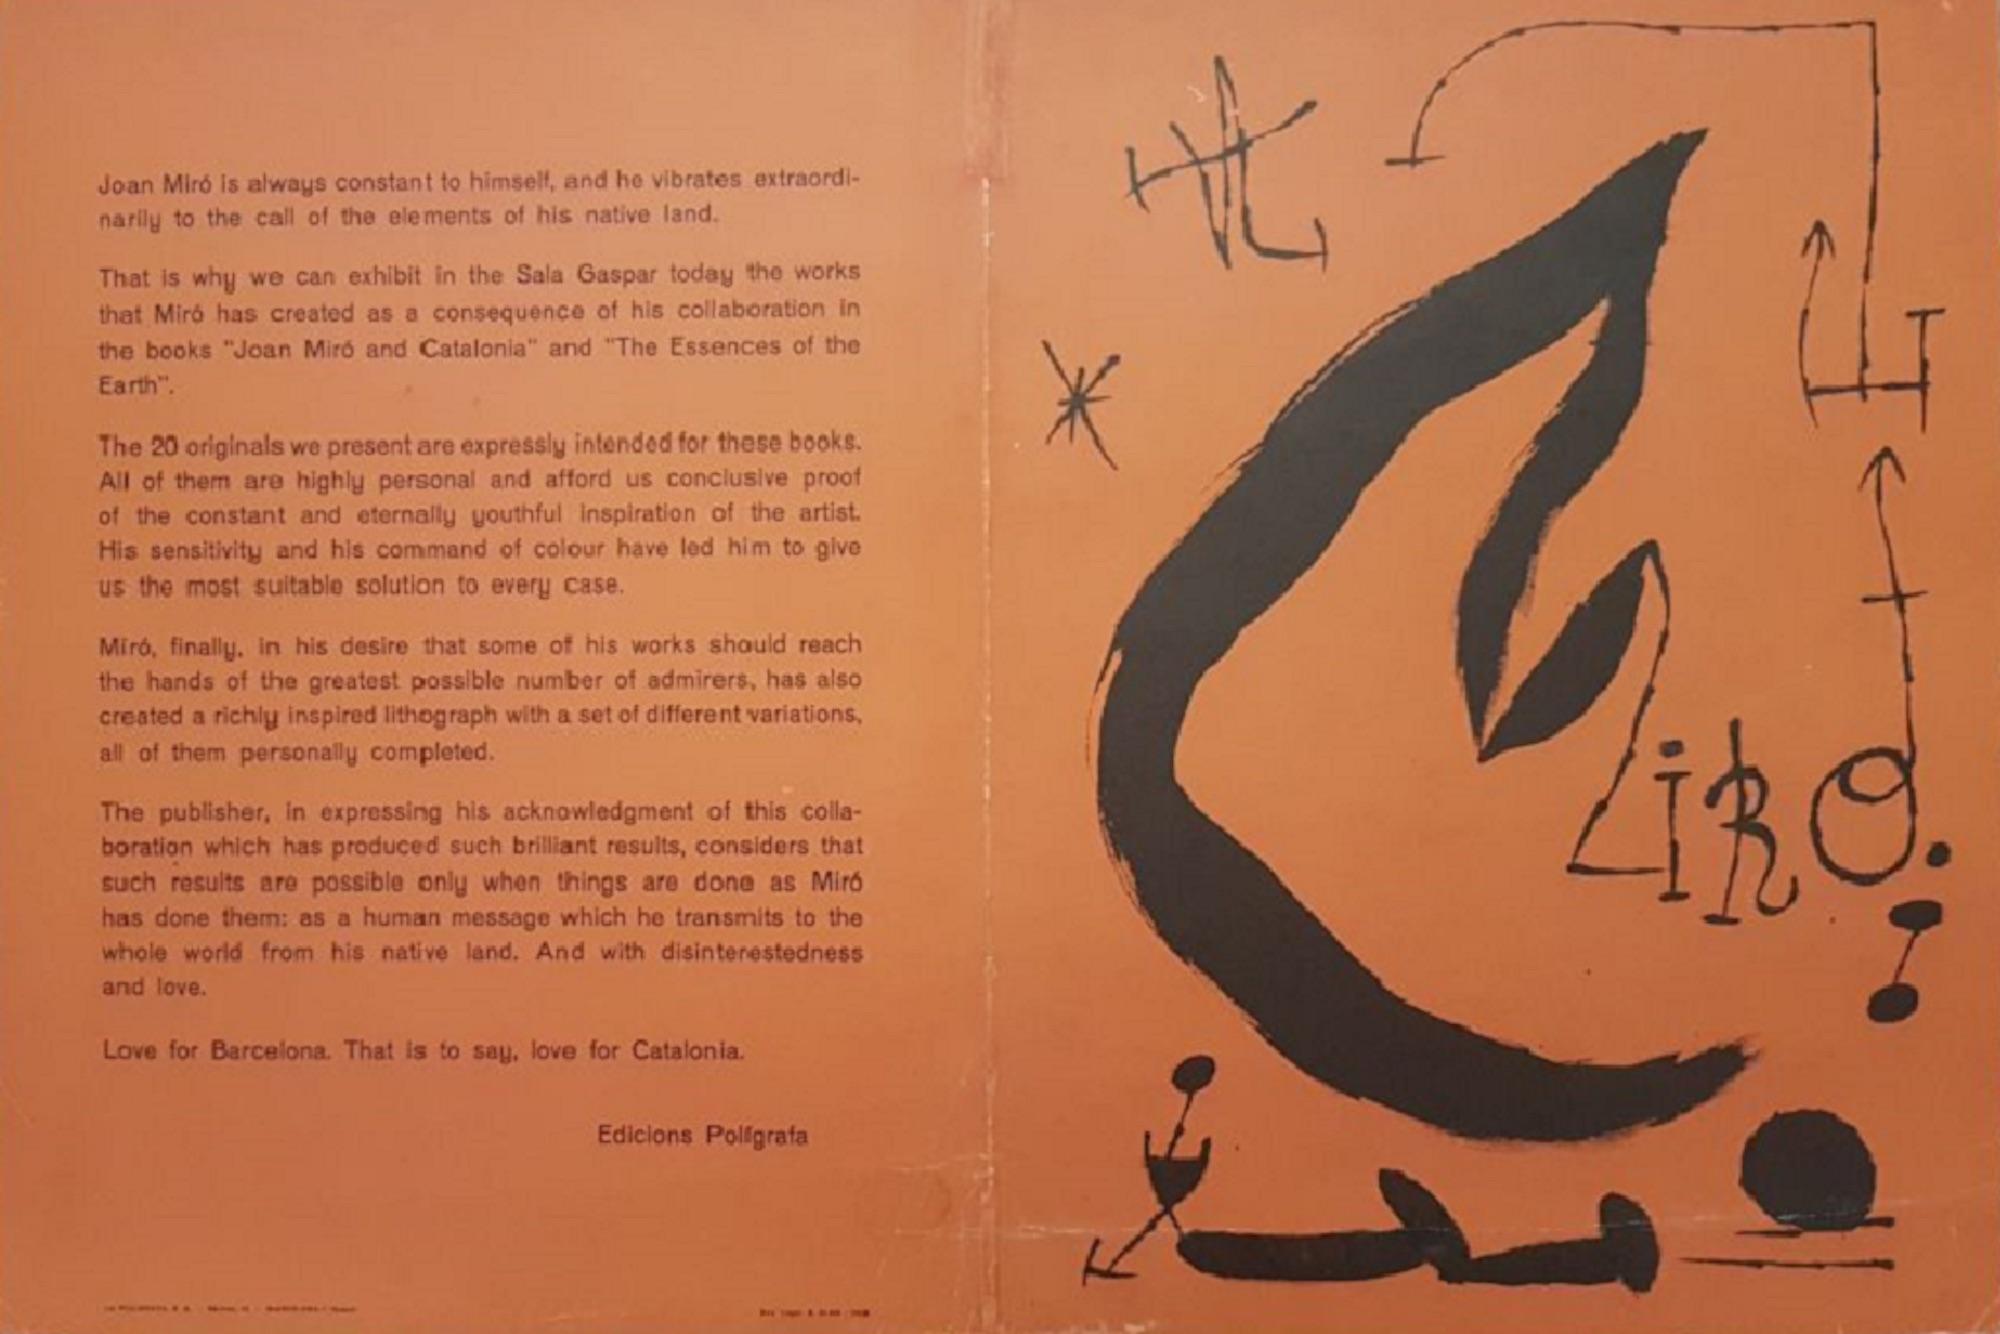 Les Essències de la Terra - Lithograph by Joan Mirò - 1968 - Print by Joan Miró